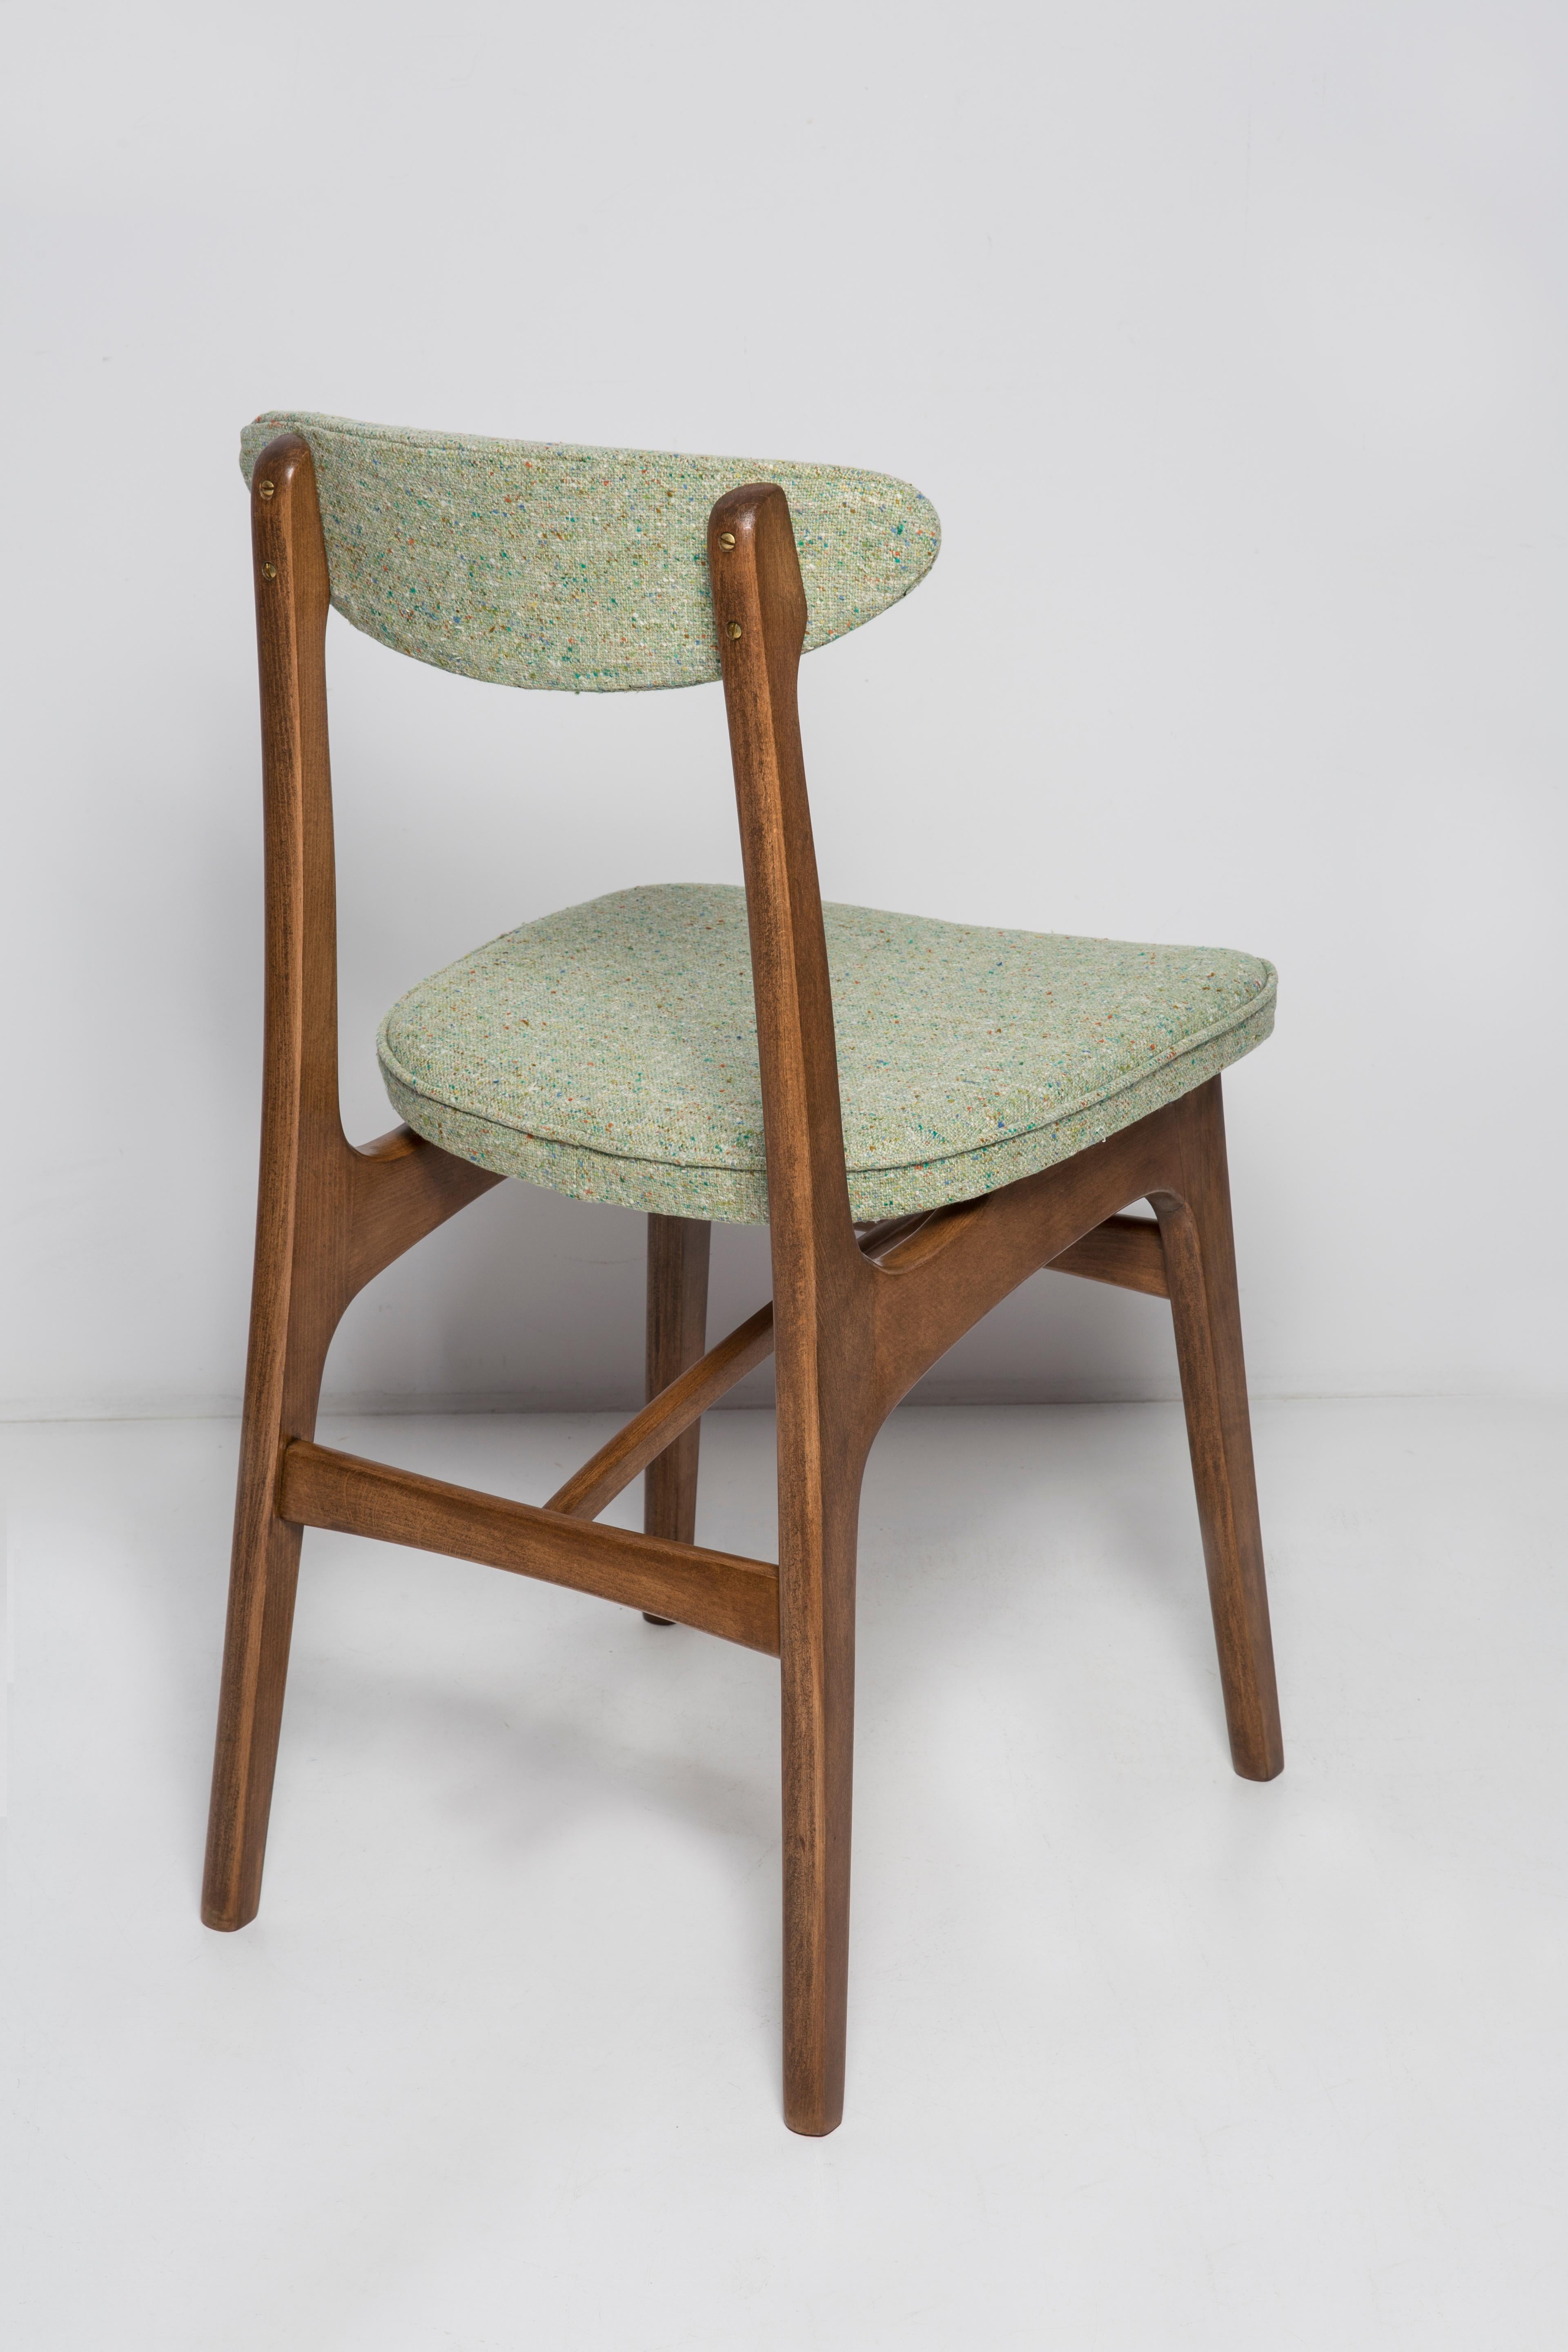 Douze chaises en laine verte du milieu du siècle, Wood Wood, Rajmund Halas, Pologne, années 1960 Excellent état - En vente à 05-080 Hornowek, PL